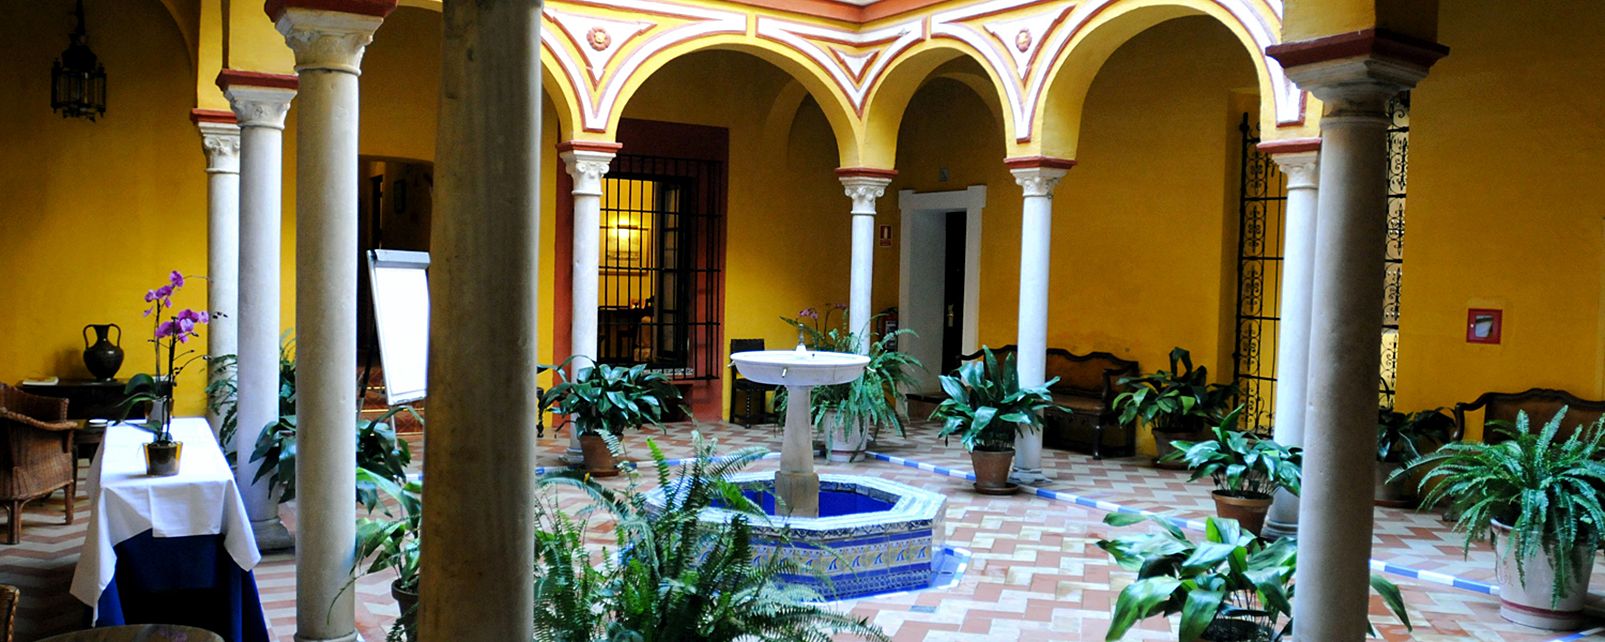 Hôtel Las Casas De La Juderia